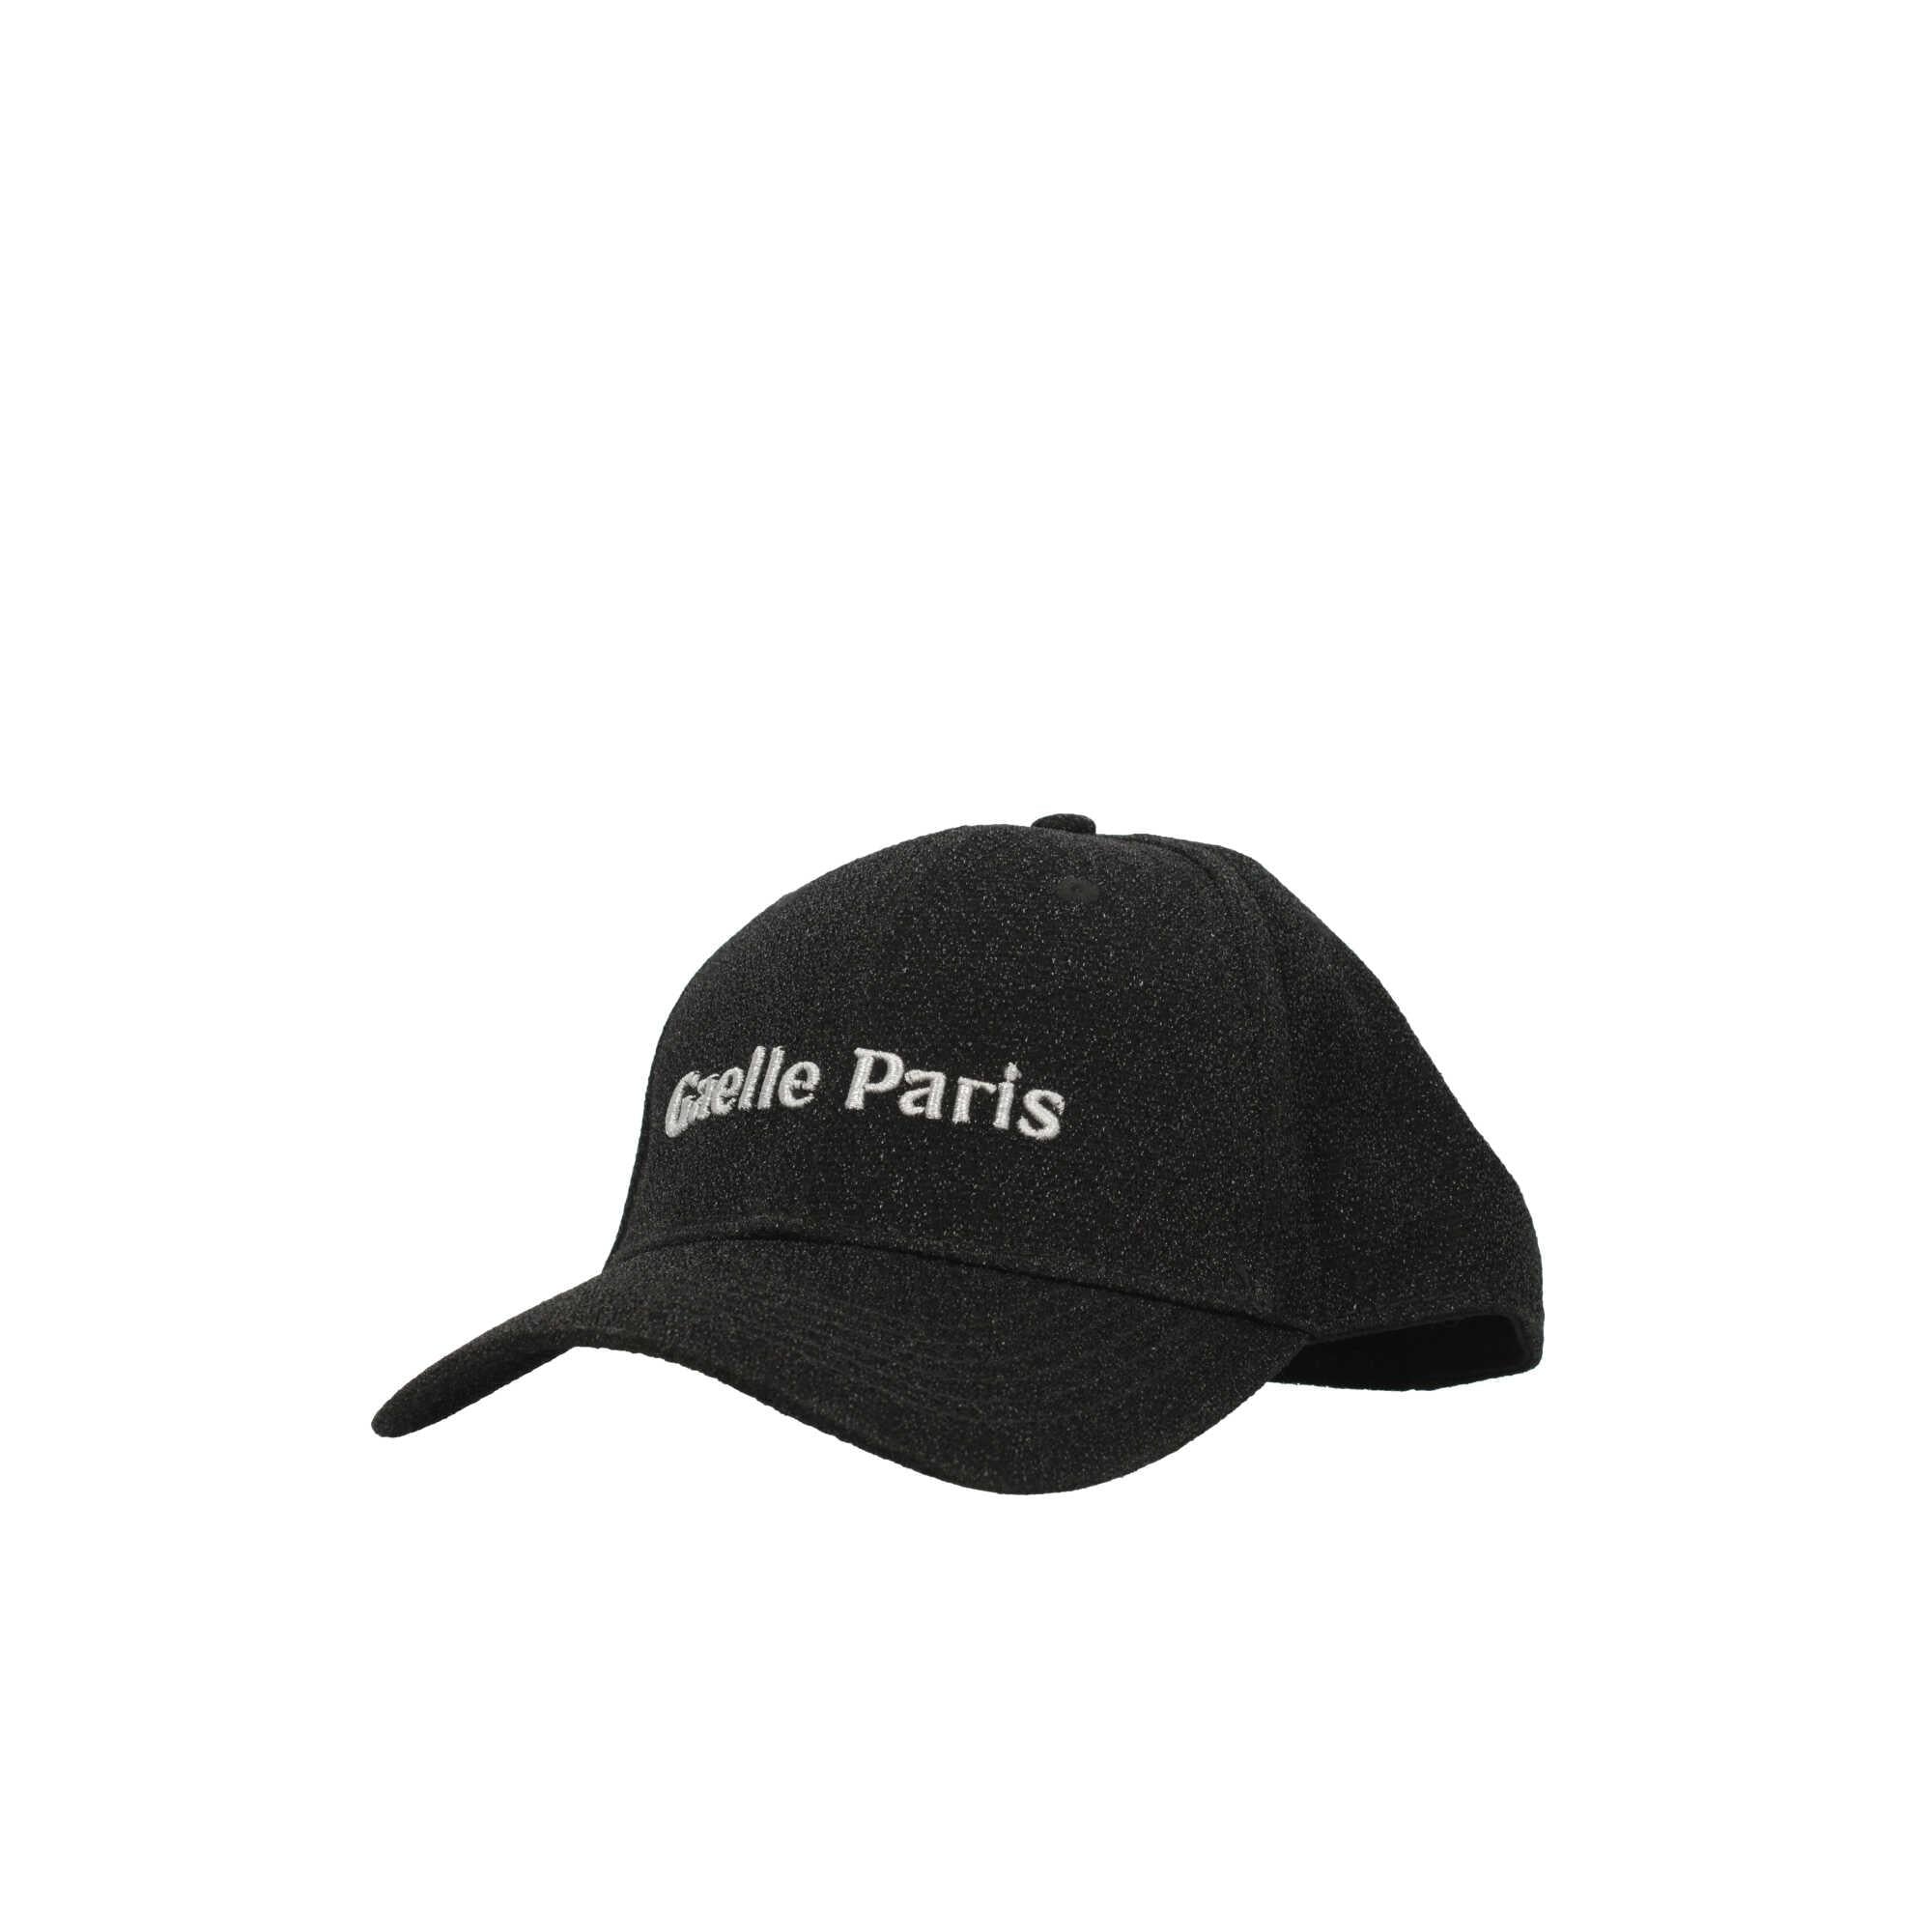 Cappello Gaelle Paris in lurex